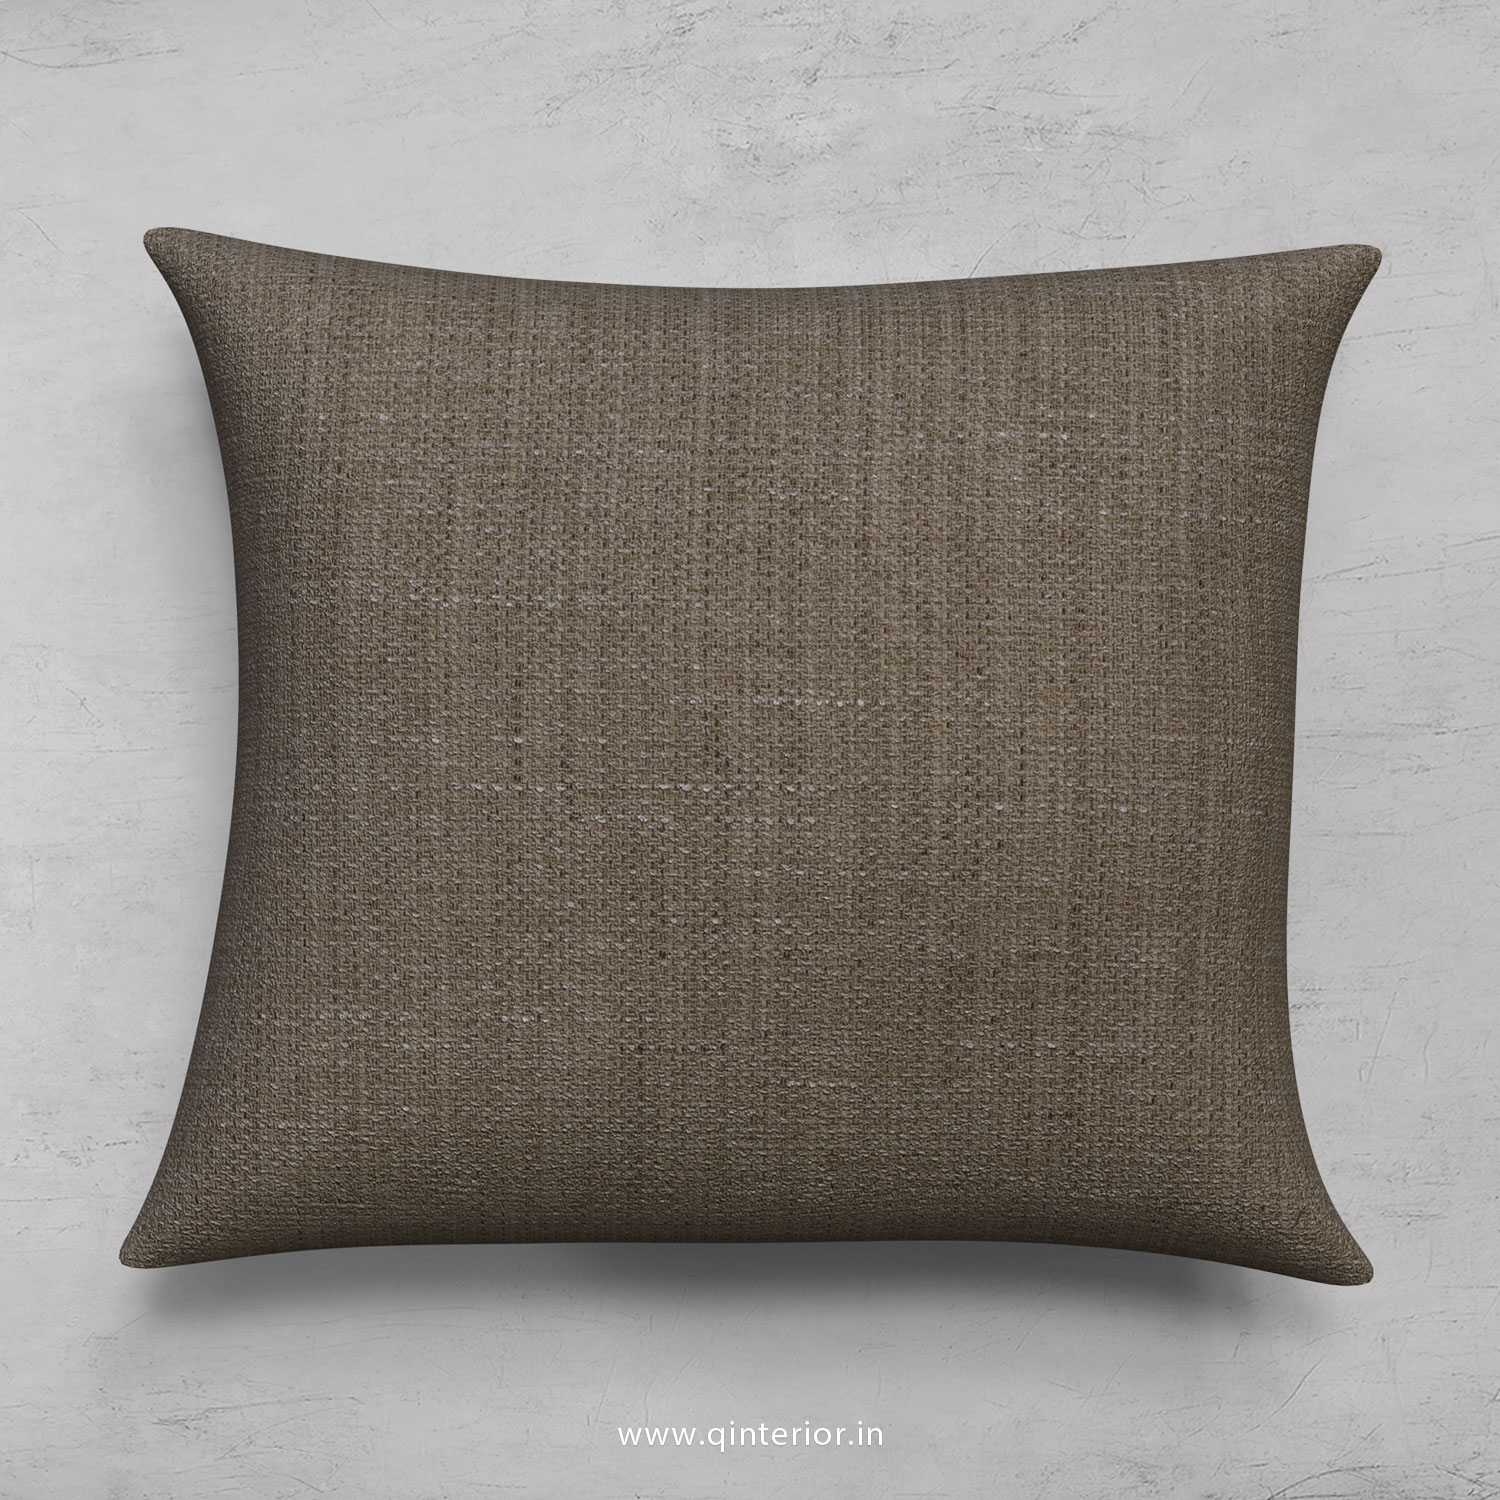 Cushion With Cushion Cover in Cotton Plain - CUS001 CP11